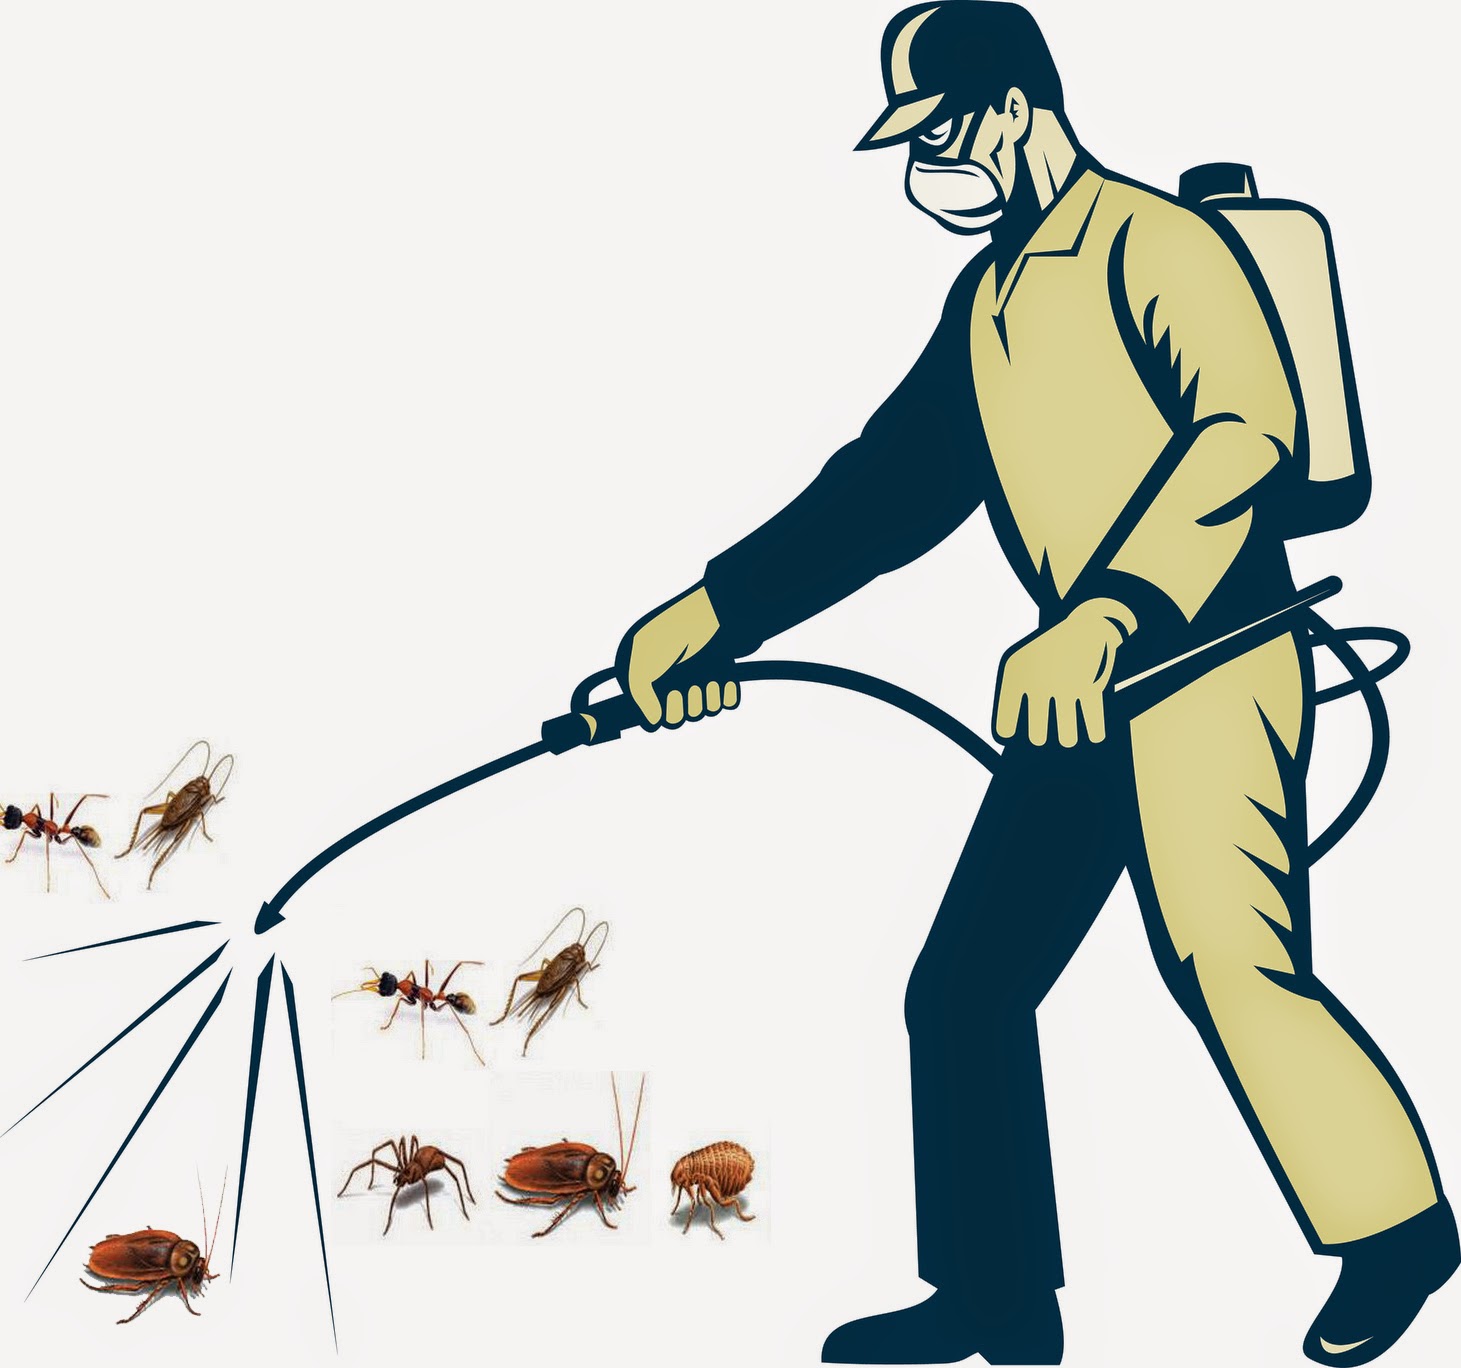 Hướng dẫn phun thuốc diệt muỗi đúng cách an toàn cho sức khỏe gia đình